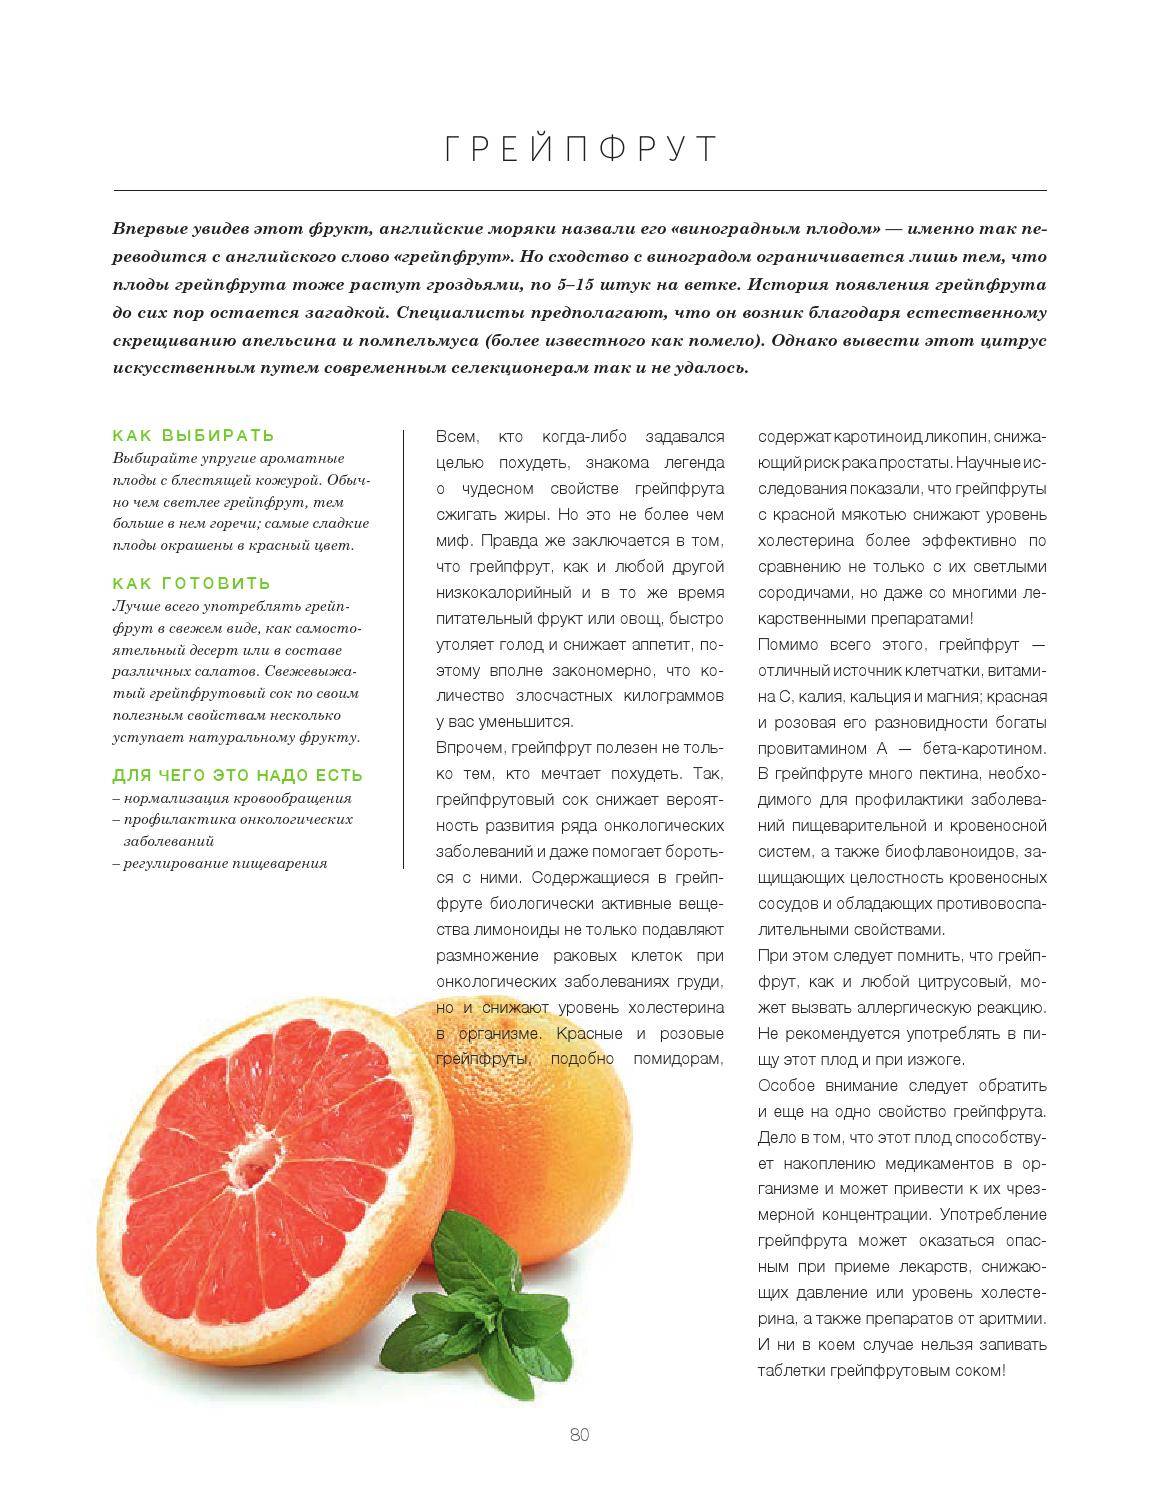 Грейпфрут: польза и вред для организма и похудения, отзывы